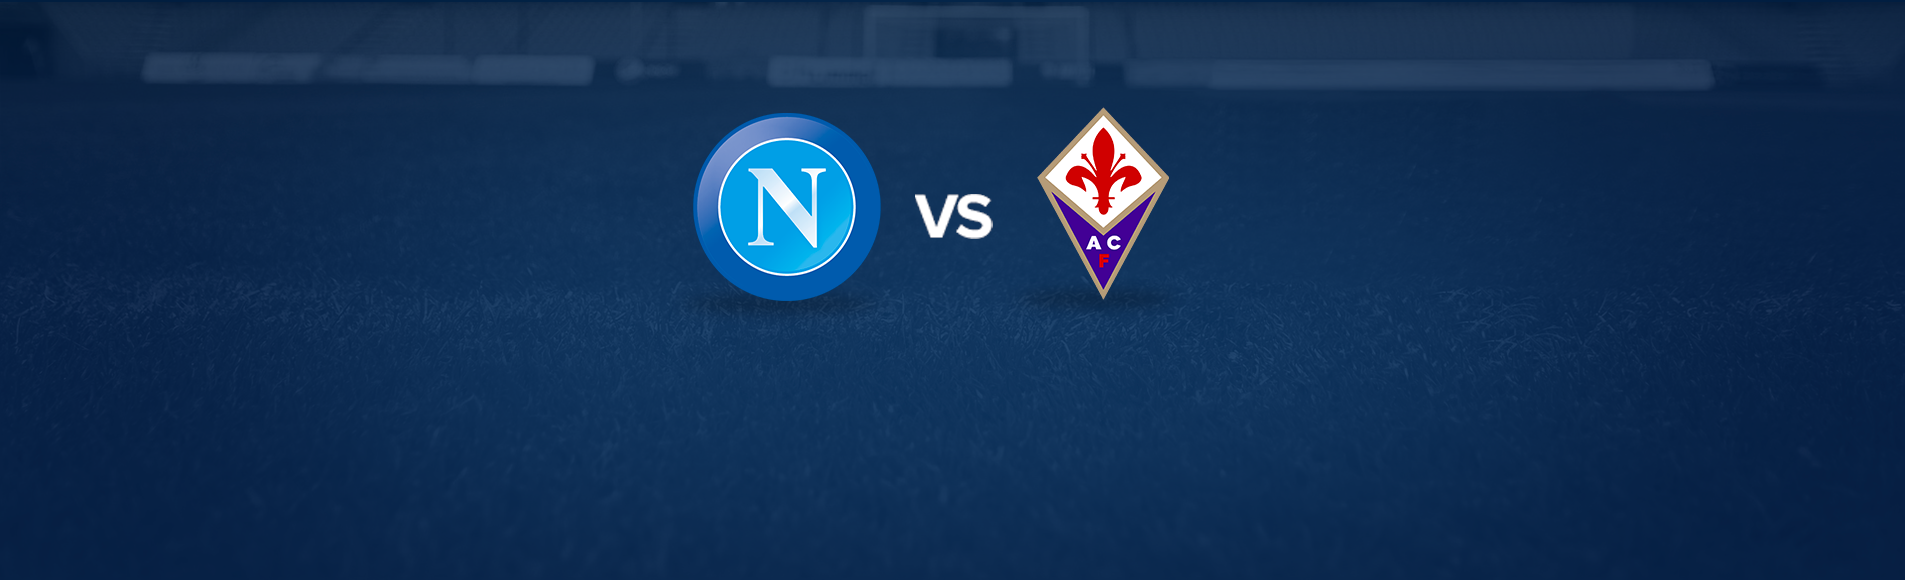 Coppa Italia - Napoli - Fiorentina 2 a 5 - Il Napoli è fuori